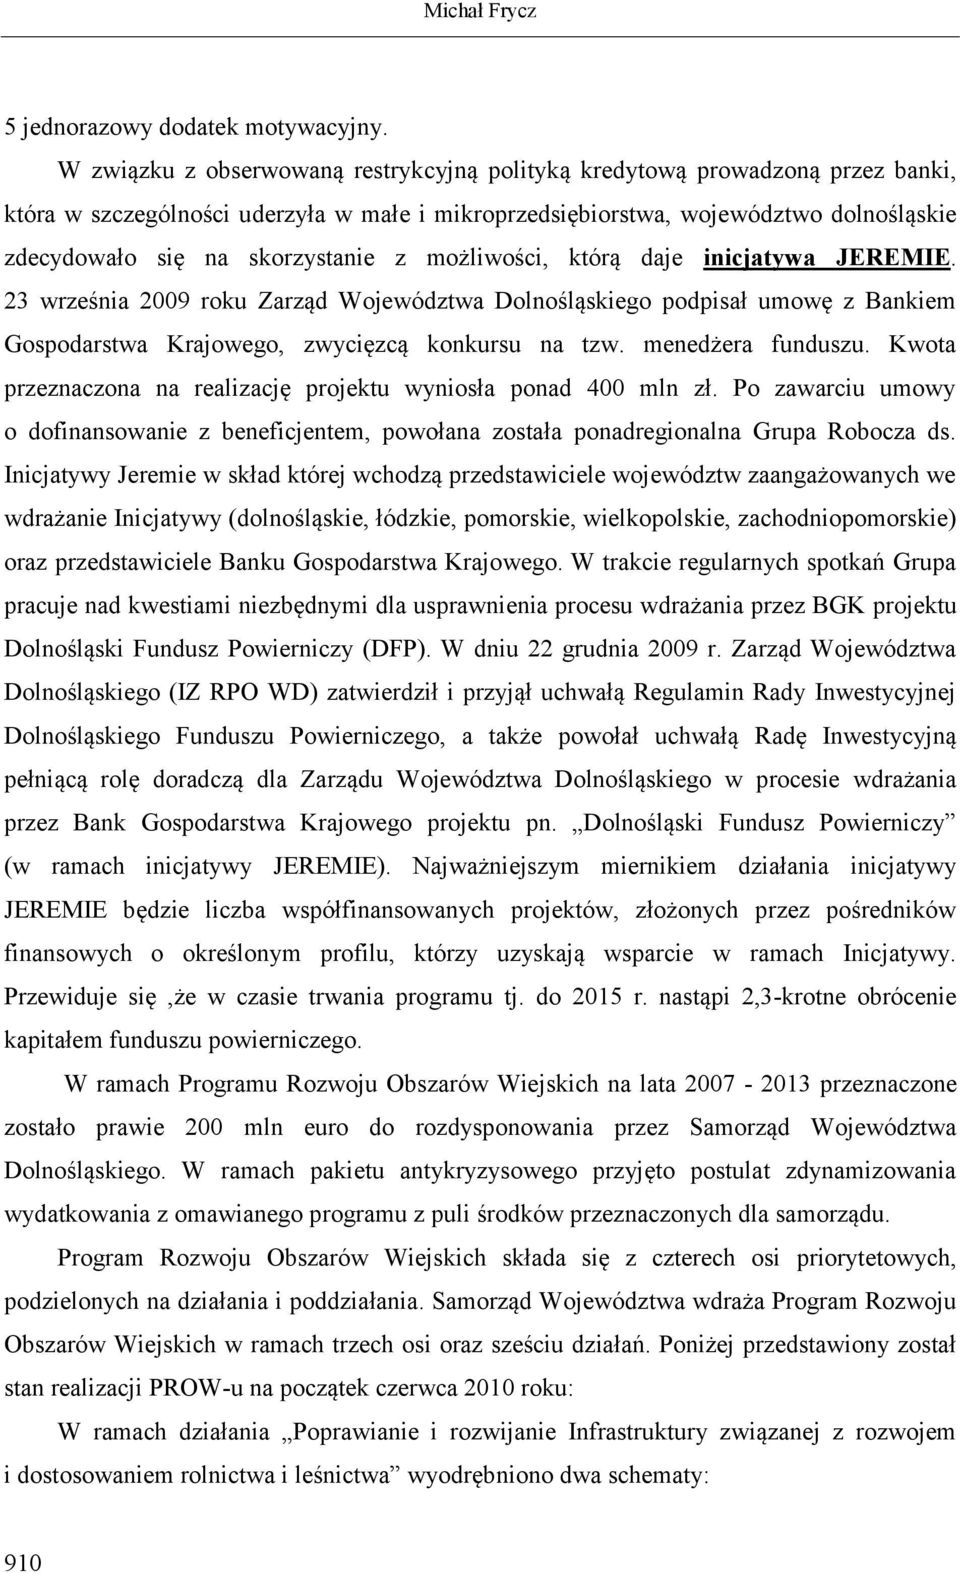 z możliwości, którą daje inicjatywa JEREMIE. 23 września 2009 roku Zarząd Województwa Dolnośląskiego podpisał umowę z Bankiem Gospodarstwa Krajowego, zwycięzcą konkursu na tzw. menedżera funduszu.